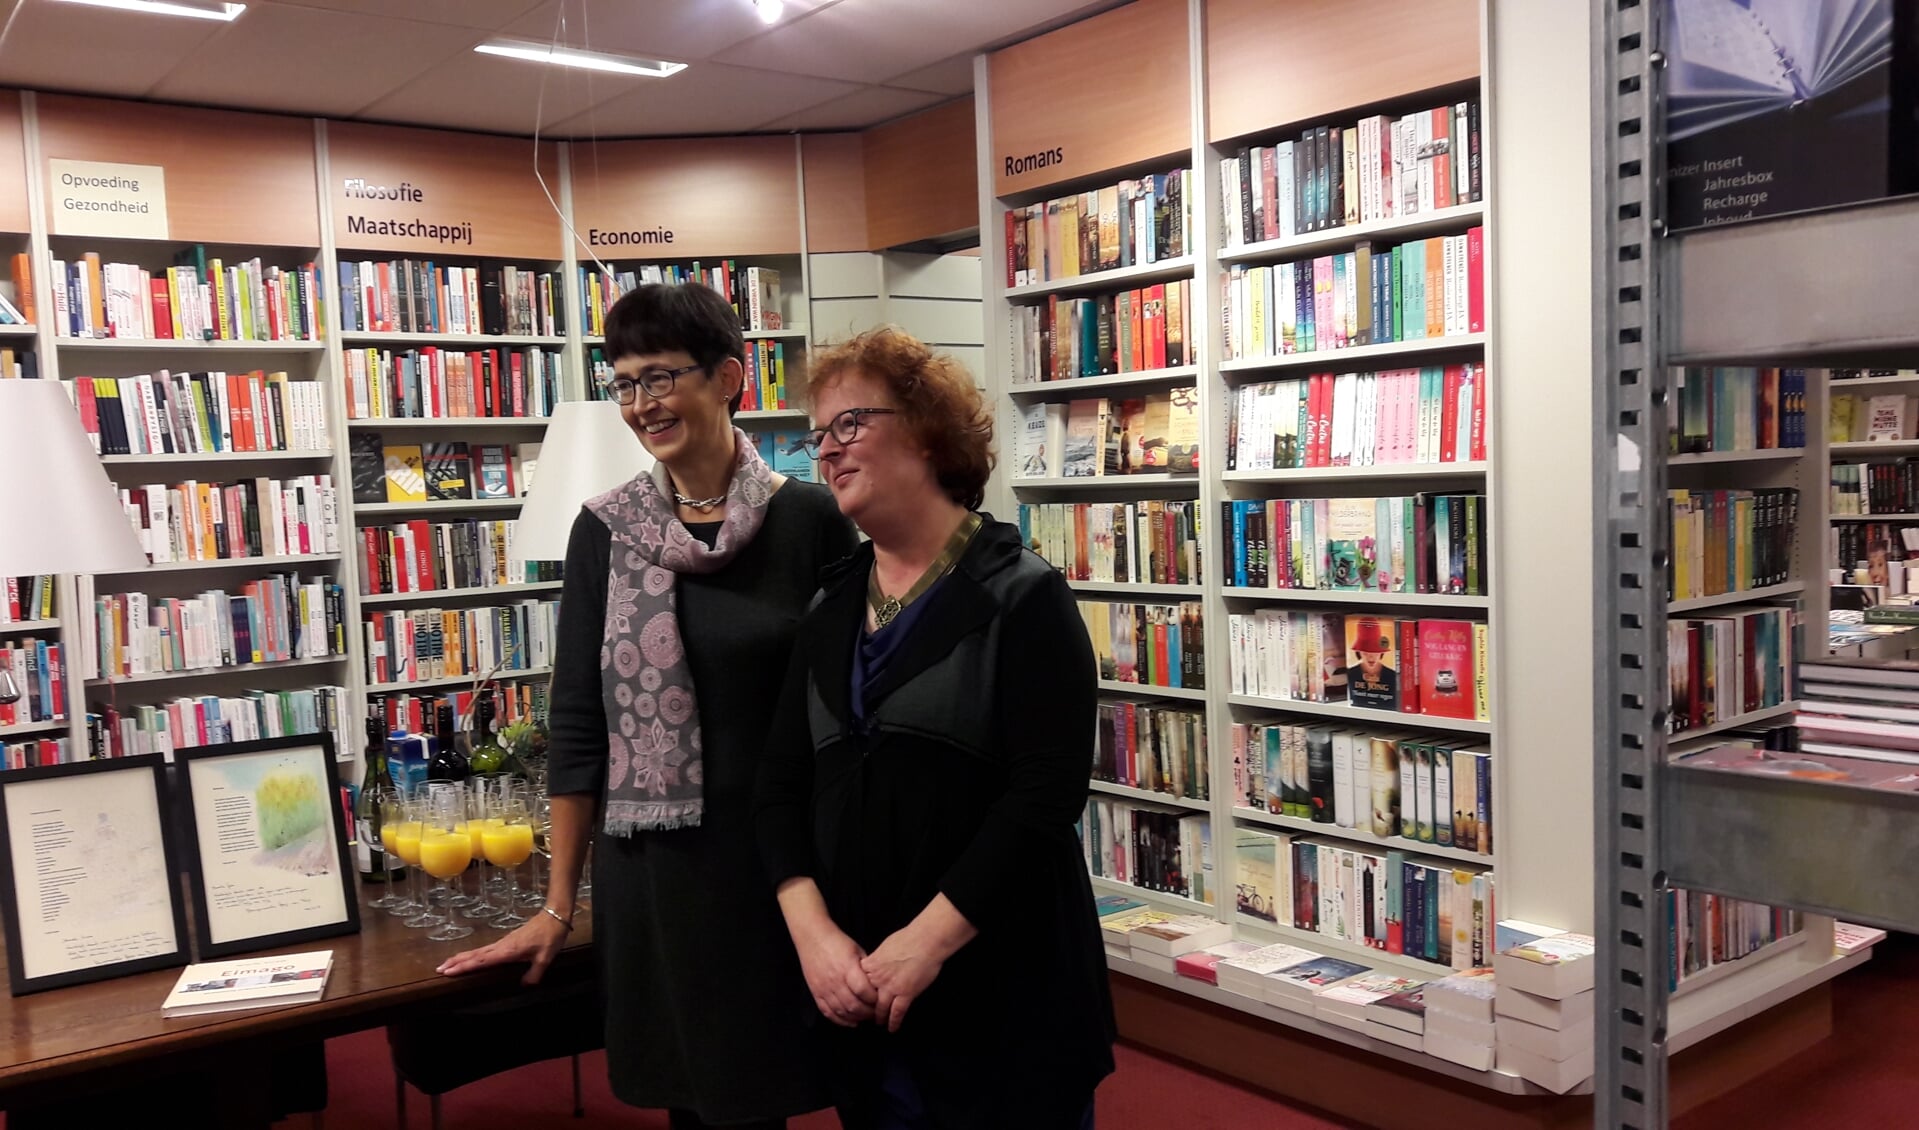 Oud-dorpsdichters Ernie Kuijer en Gea van Drie presenteren hun bundel in Boekhandel Romijn.